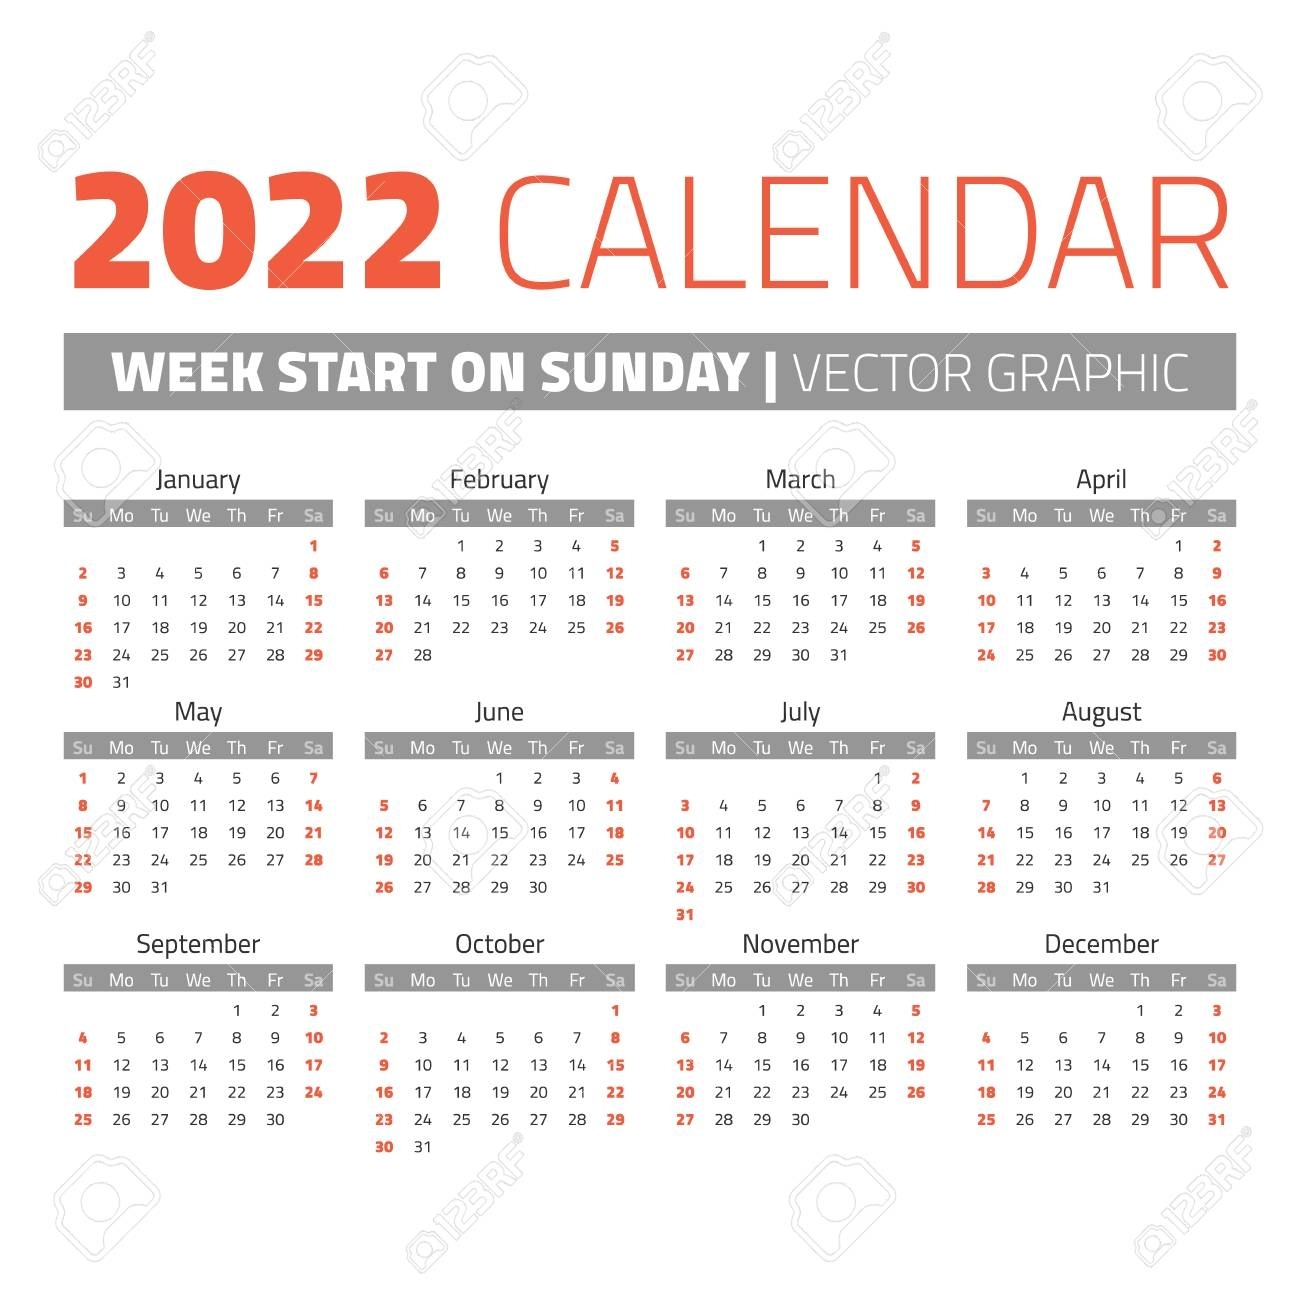 What Calendar Week Are We In | Ten Free Printable Calendar 20202021 in 2022 Calendar With Weeks